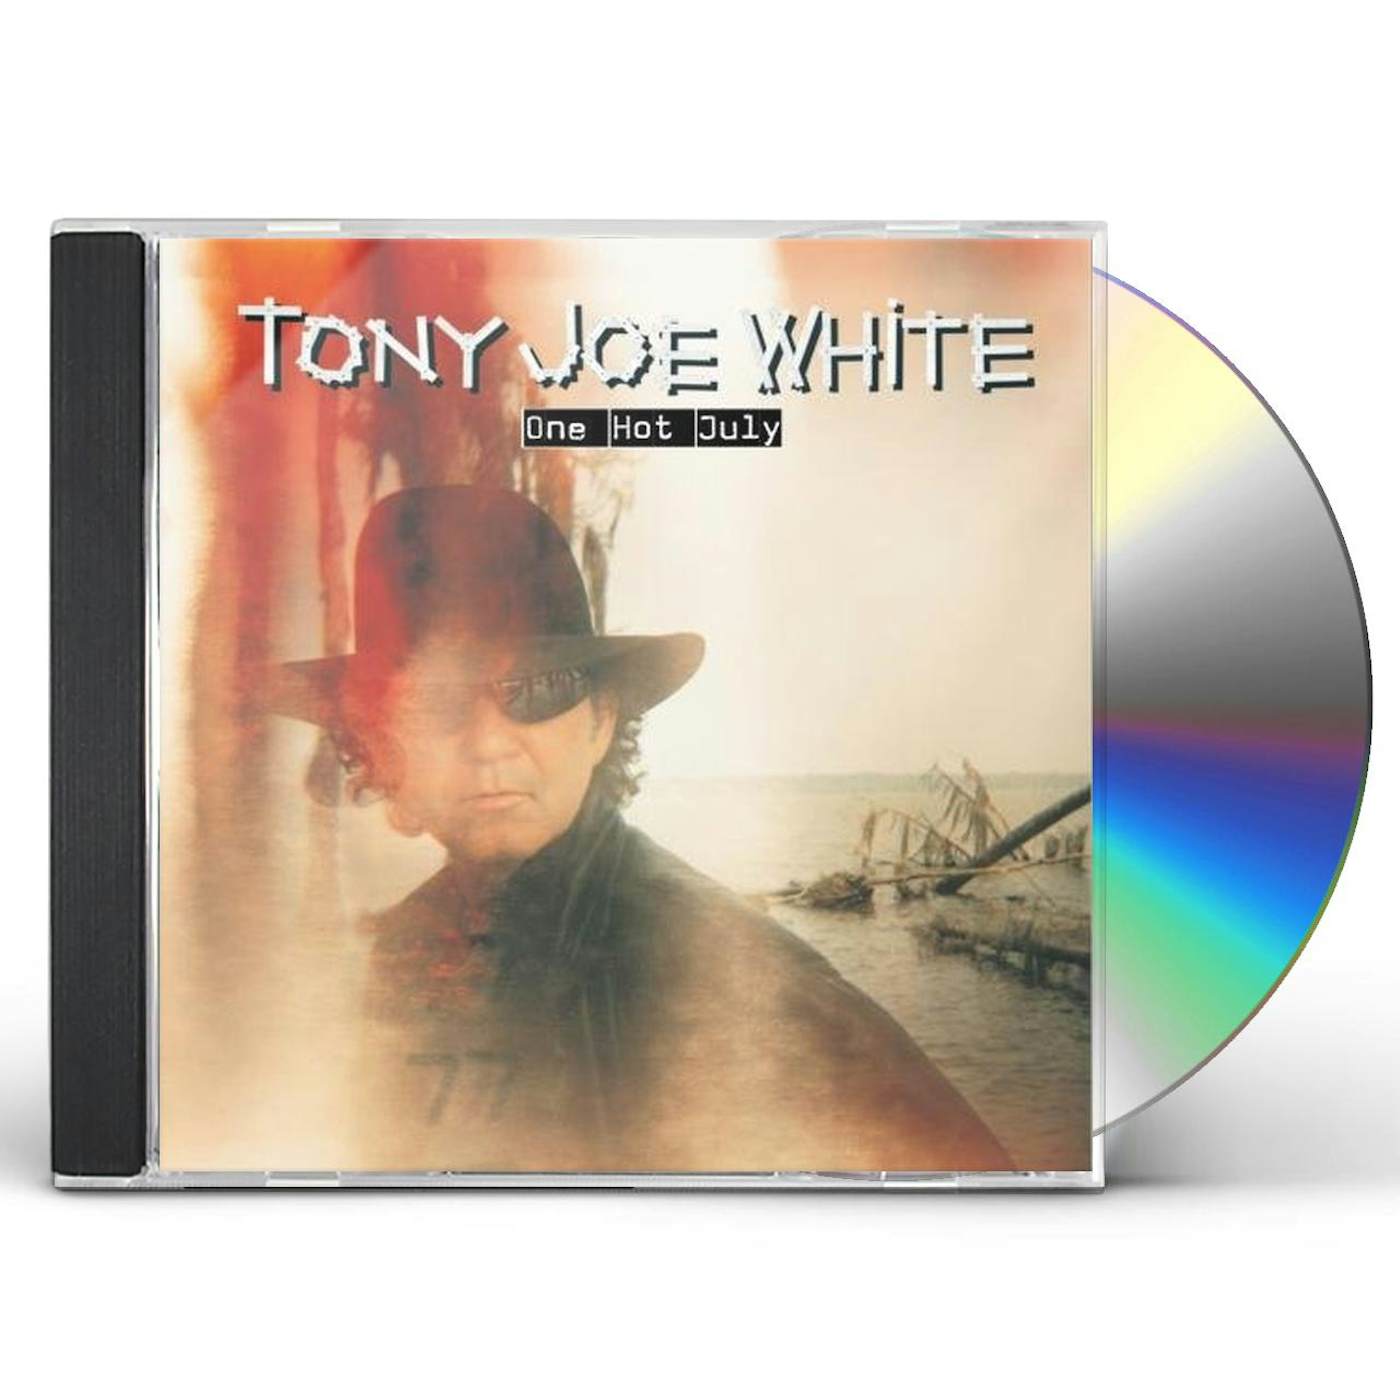 Tony Joe White ONE HOT JULY CD